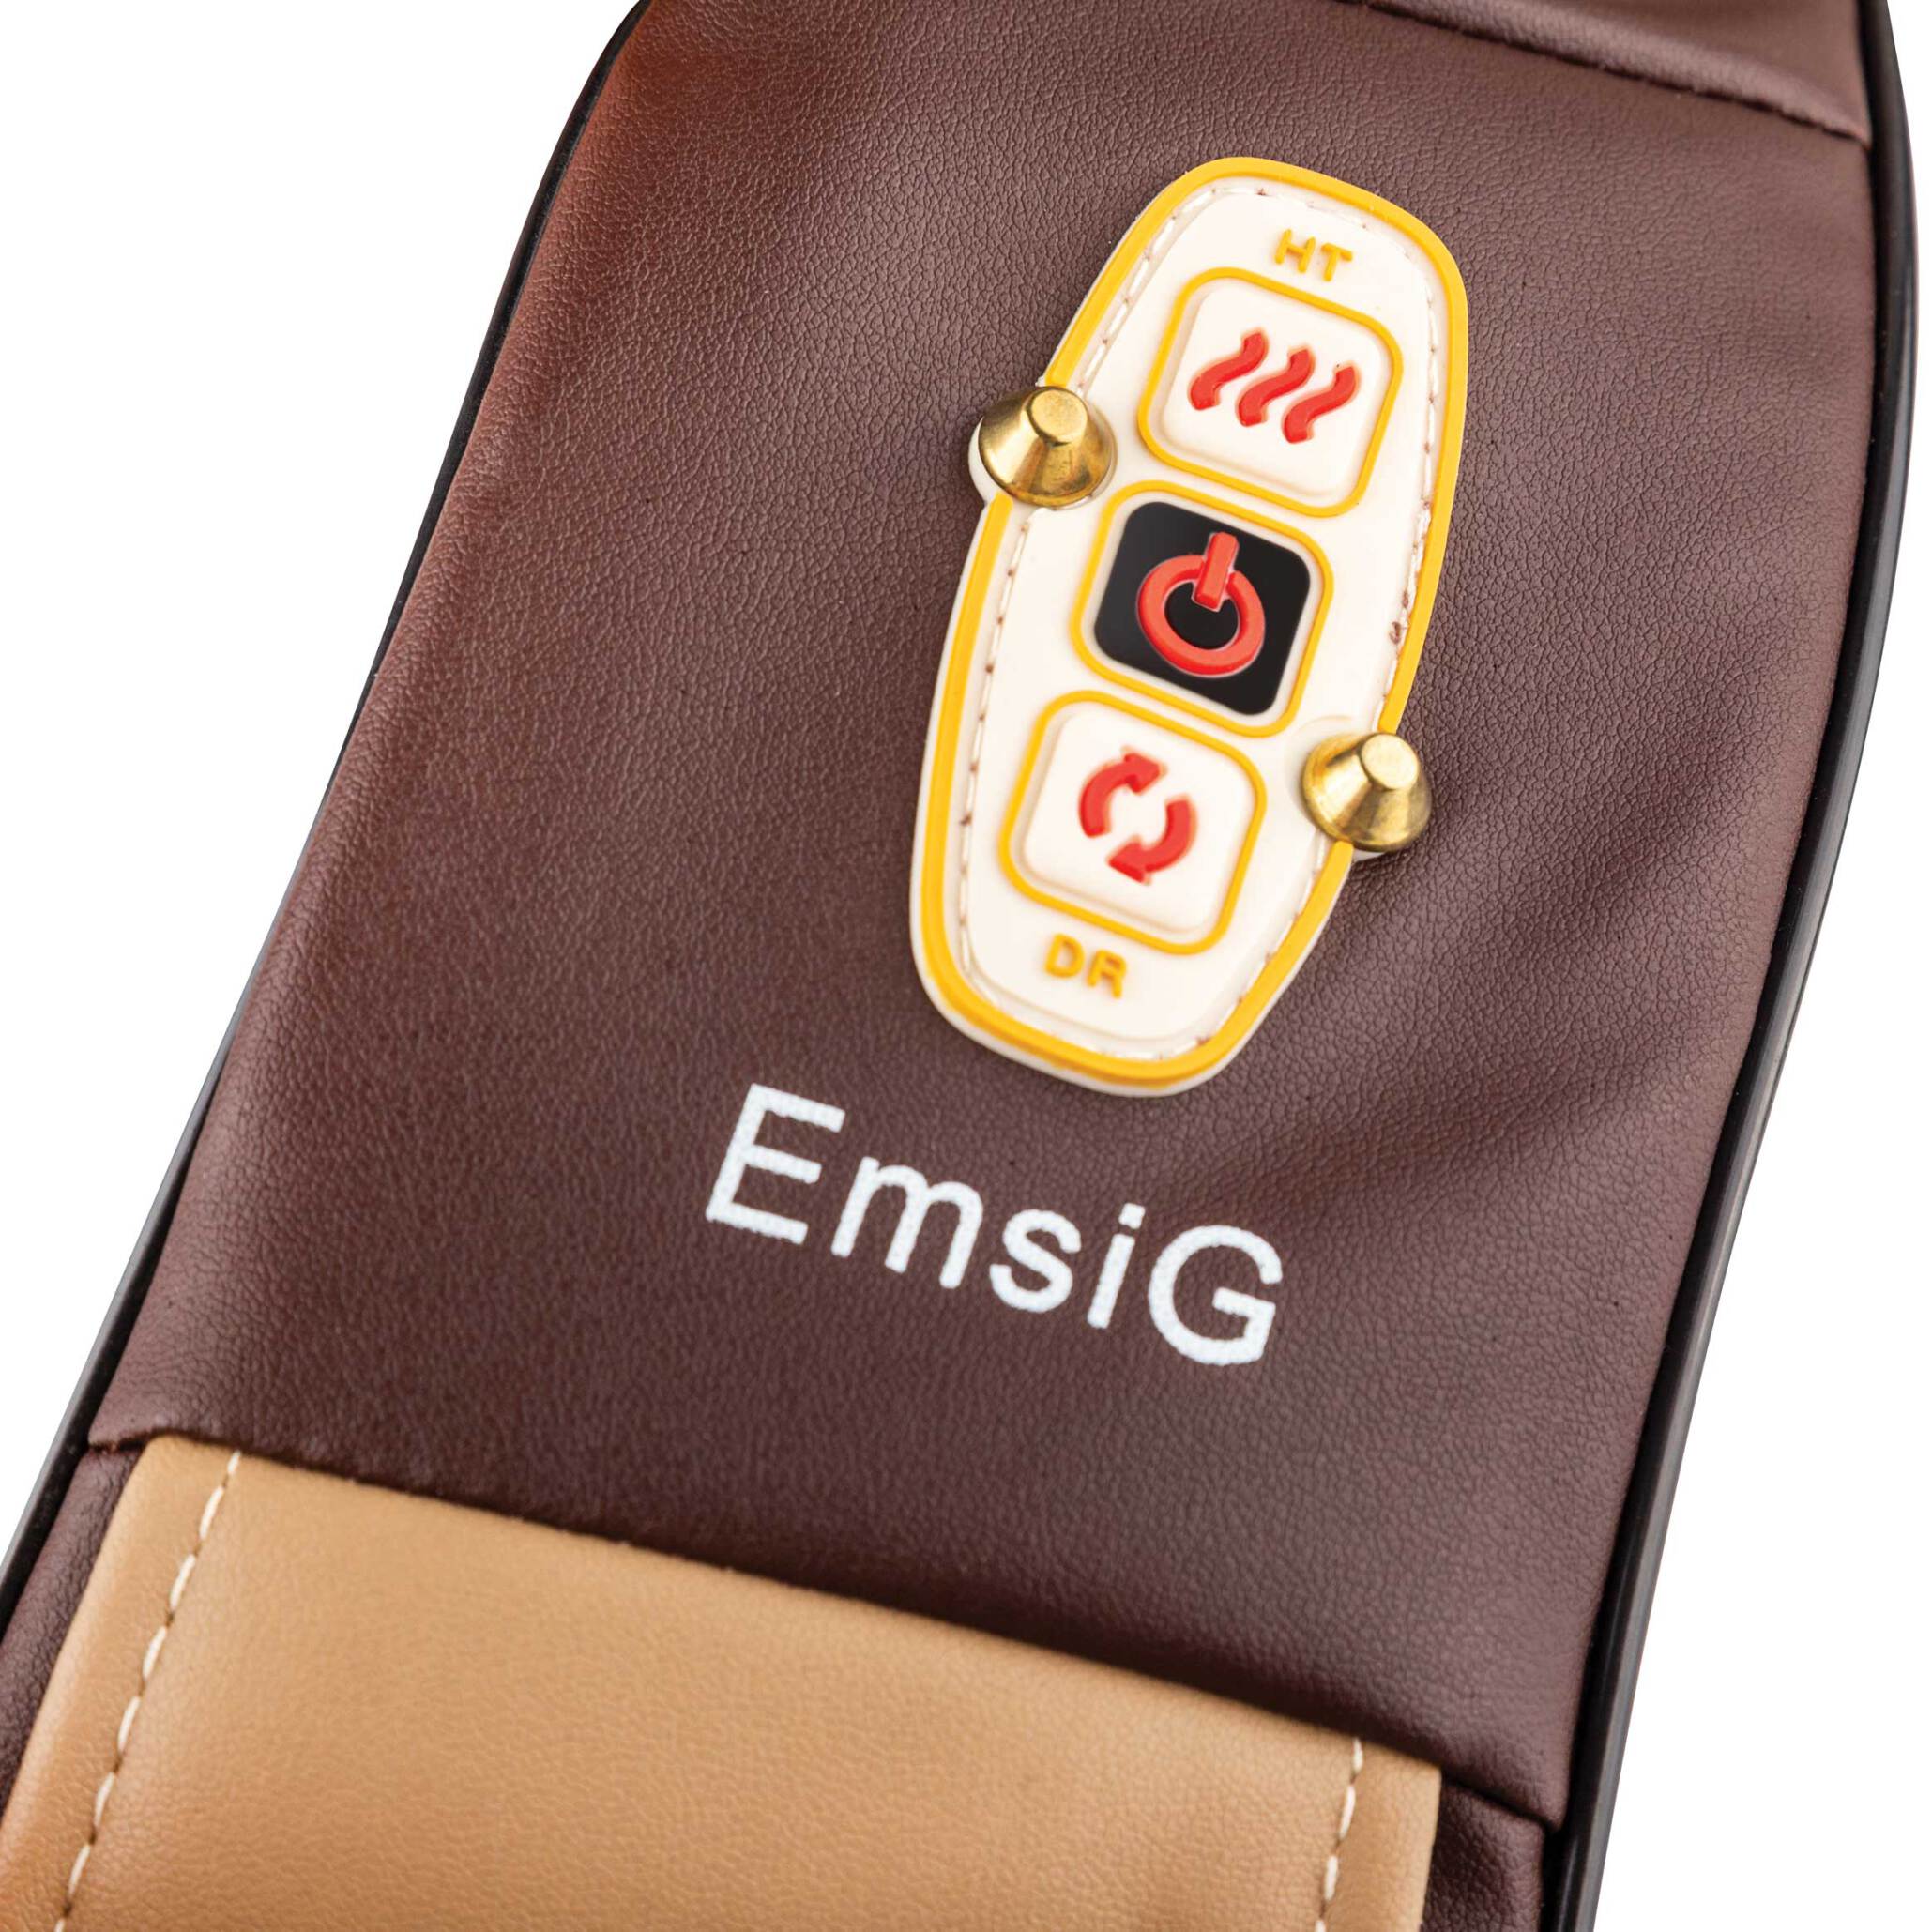  خرید ماساژور گردن امسیگ (Emsig) مدل ML105 